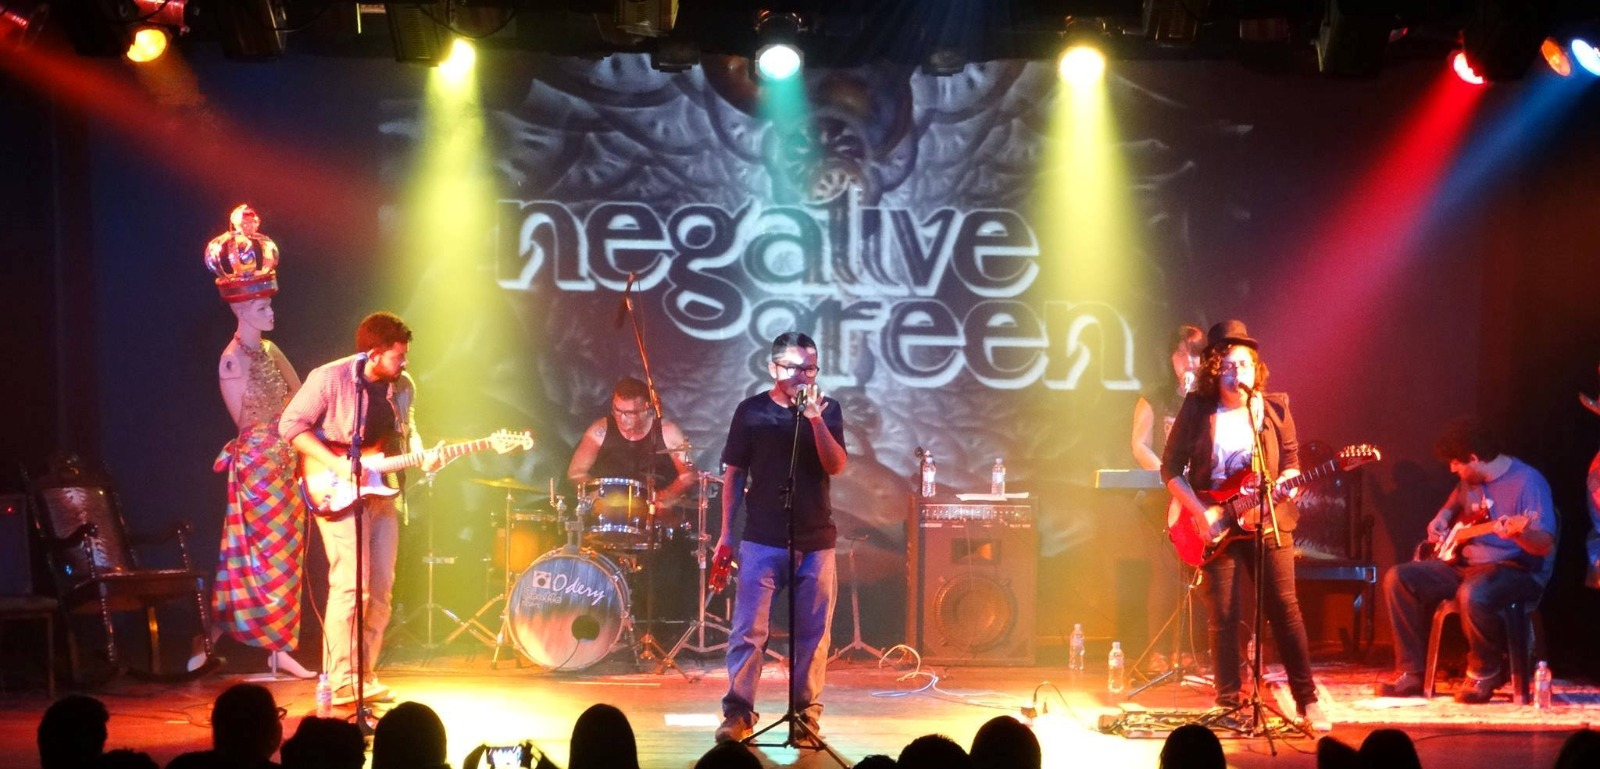 Negative Green e Hernane Be Groove são atrações no Boca da Noite desta quarta